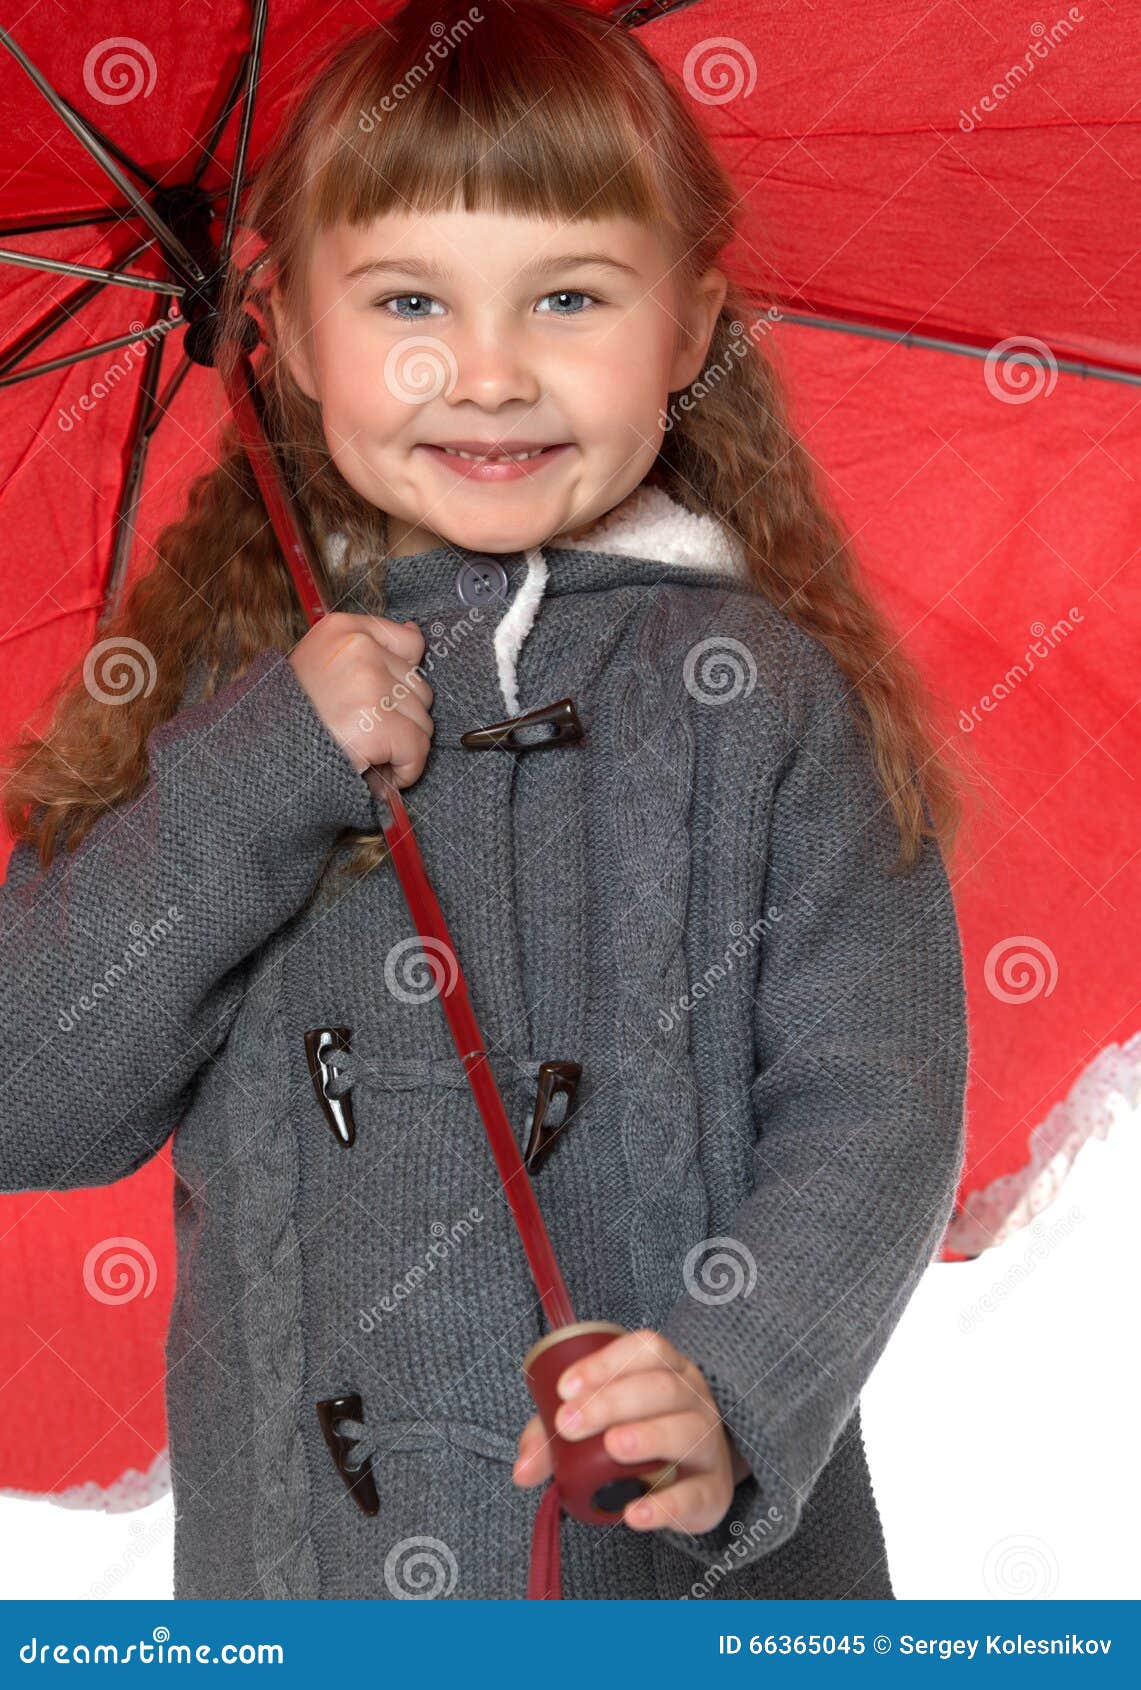 Girl holding umbrella stock image. Image of autumn, beautiful - 66365045